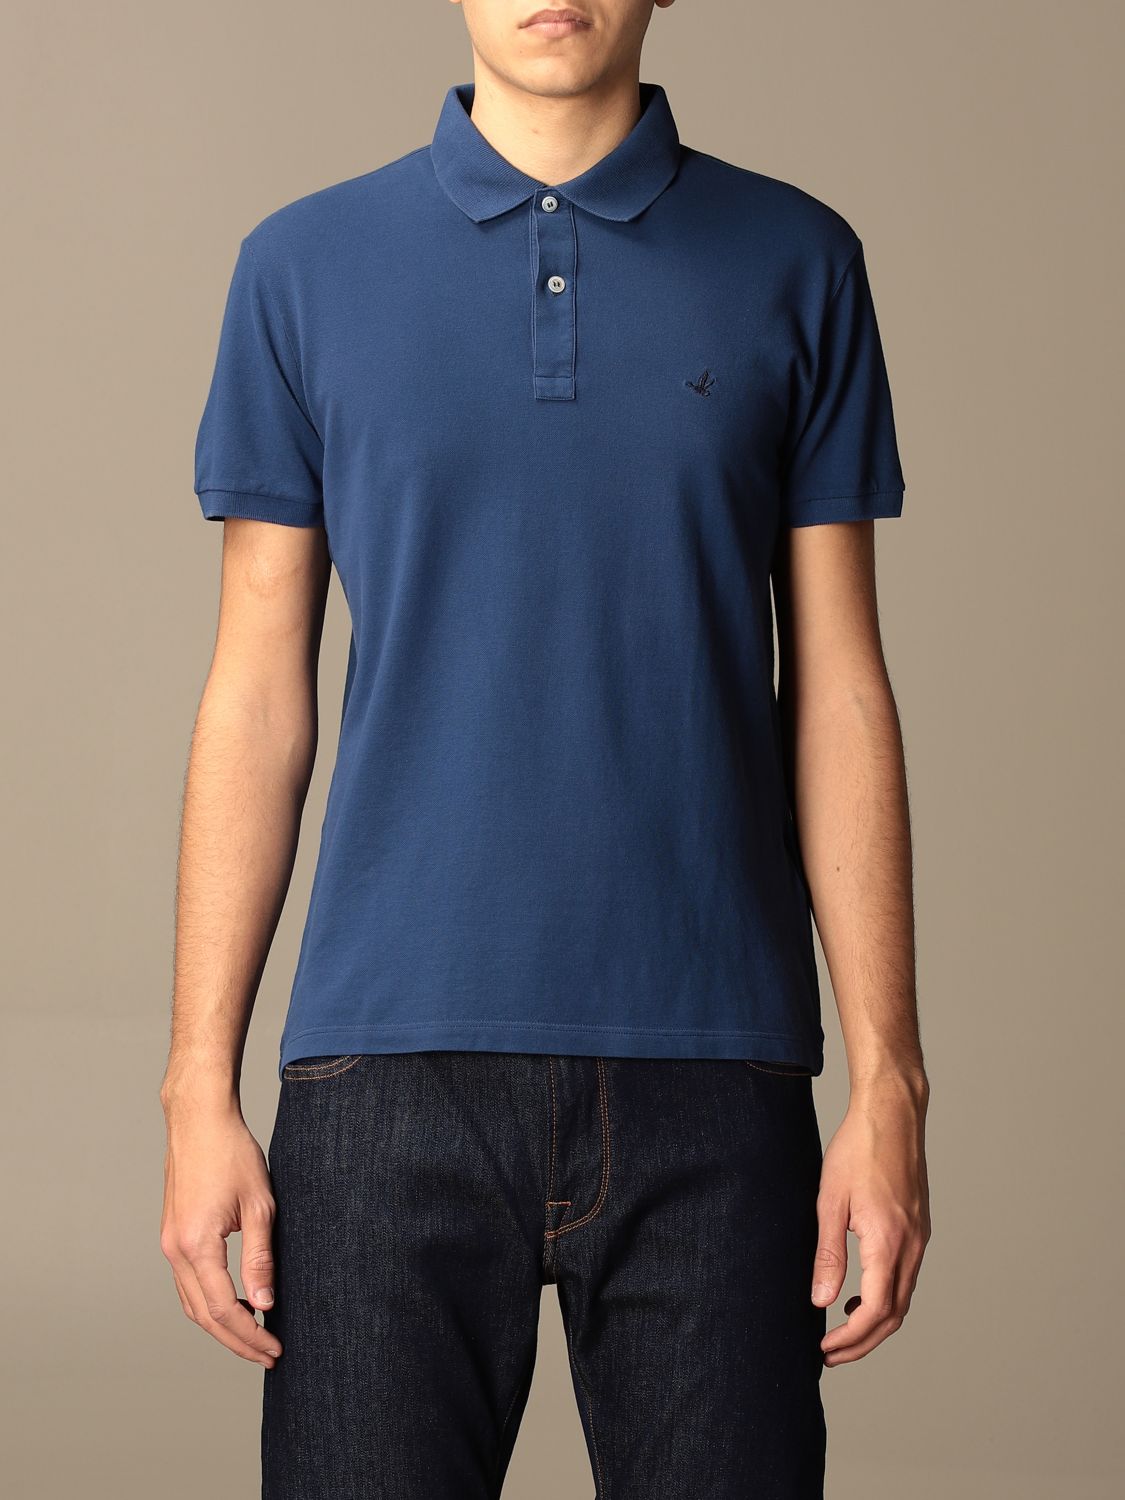 Polo shirt Brooksfield: Brooksfield polo shirt in pique cotton with logo royal blue 1